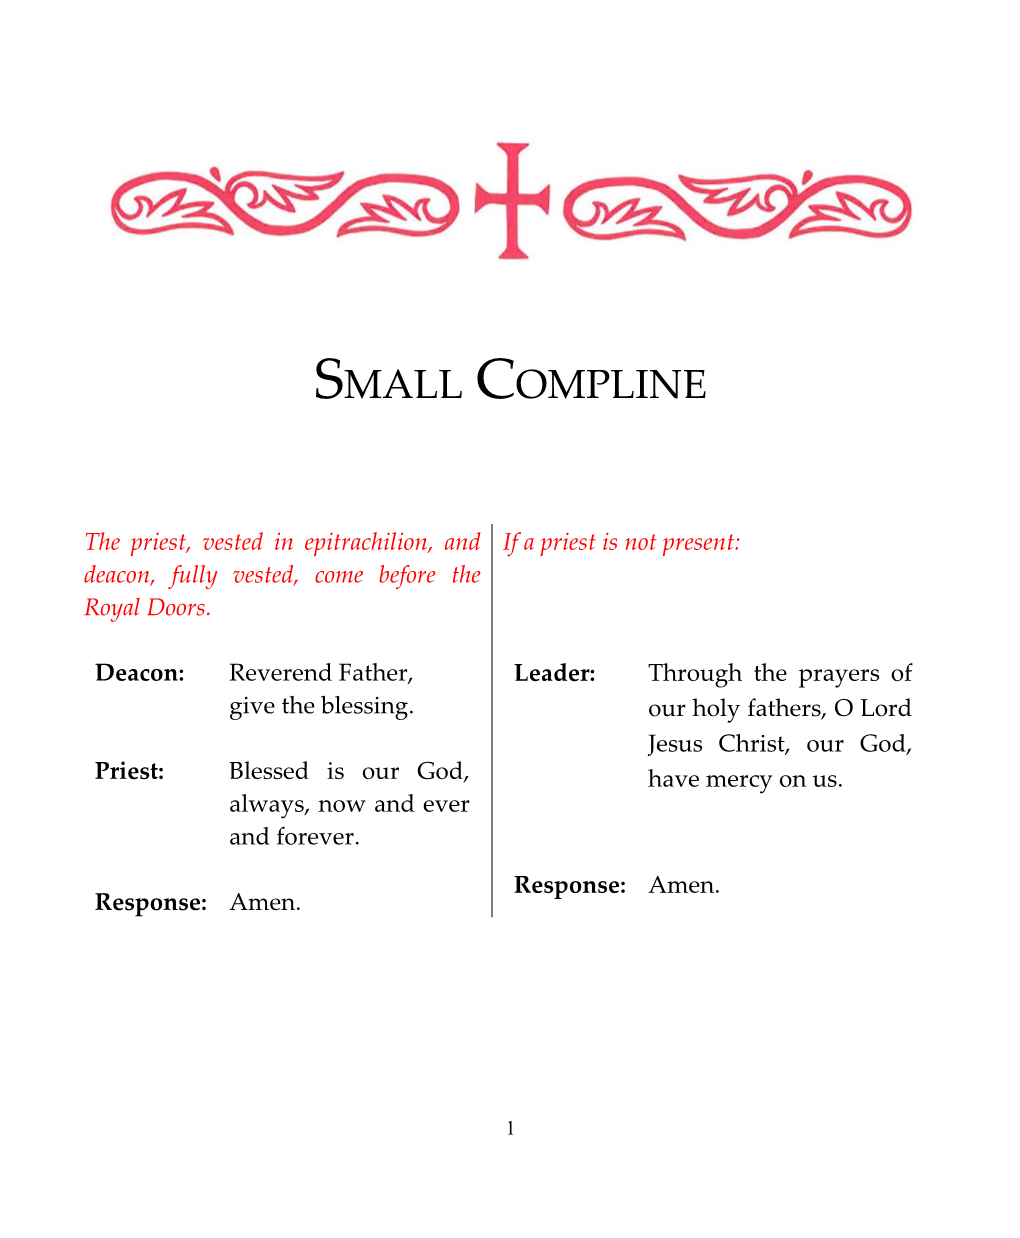 Small Compline